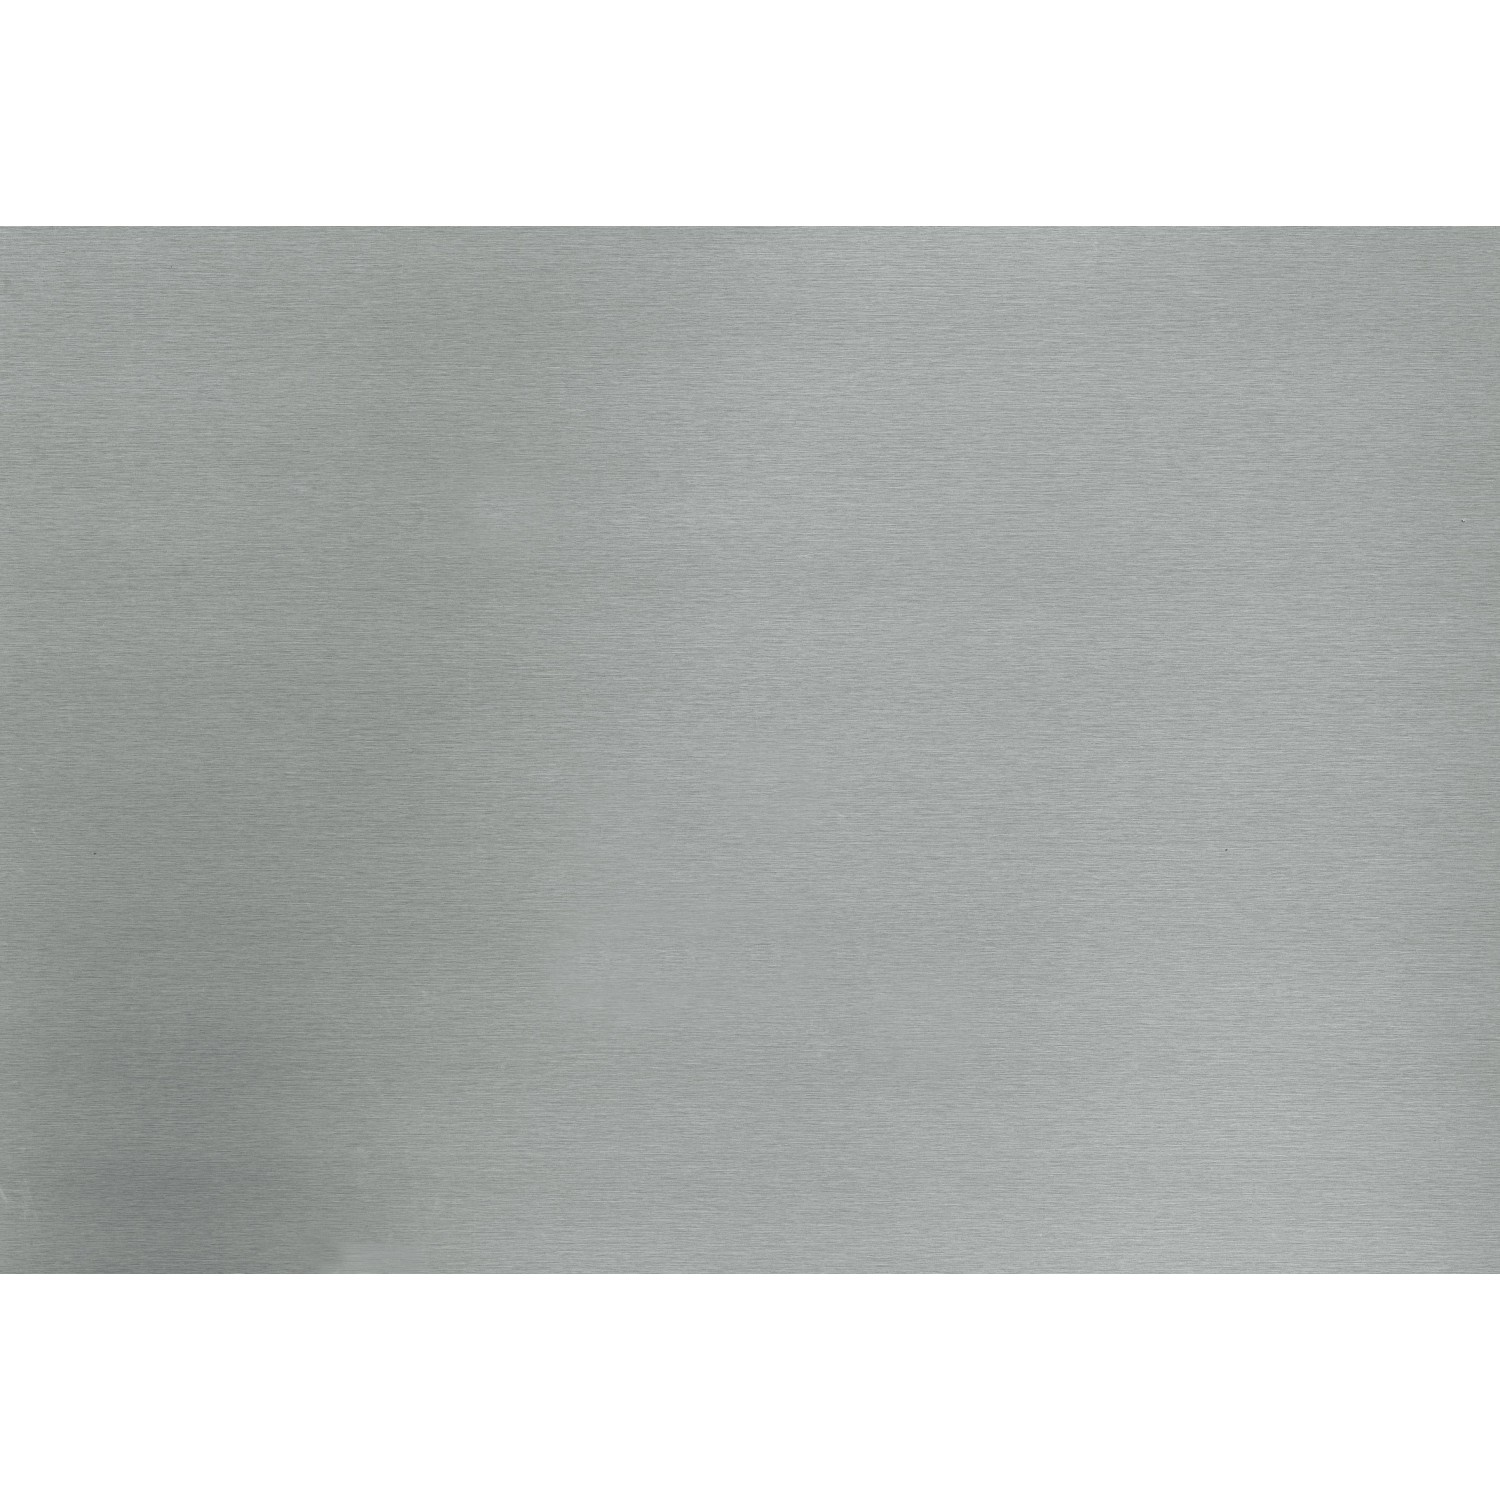 d-c-fix Klebefolie Silber matt 45 cm x 150 cm kaufen bei OBI